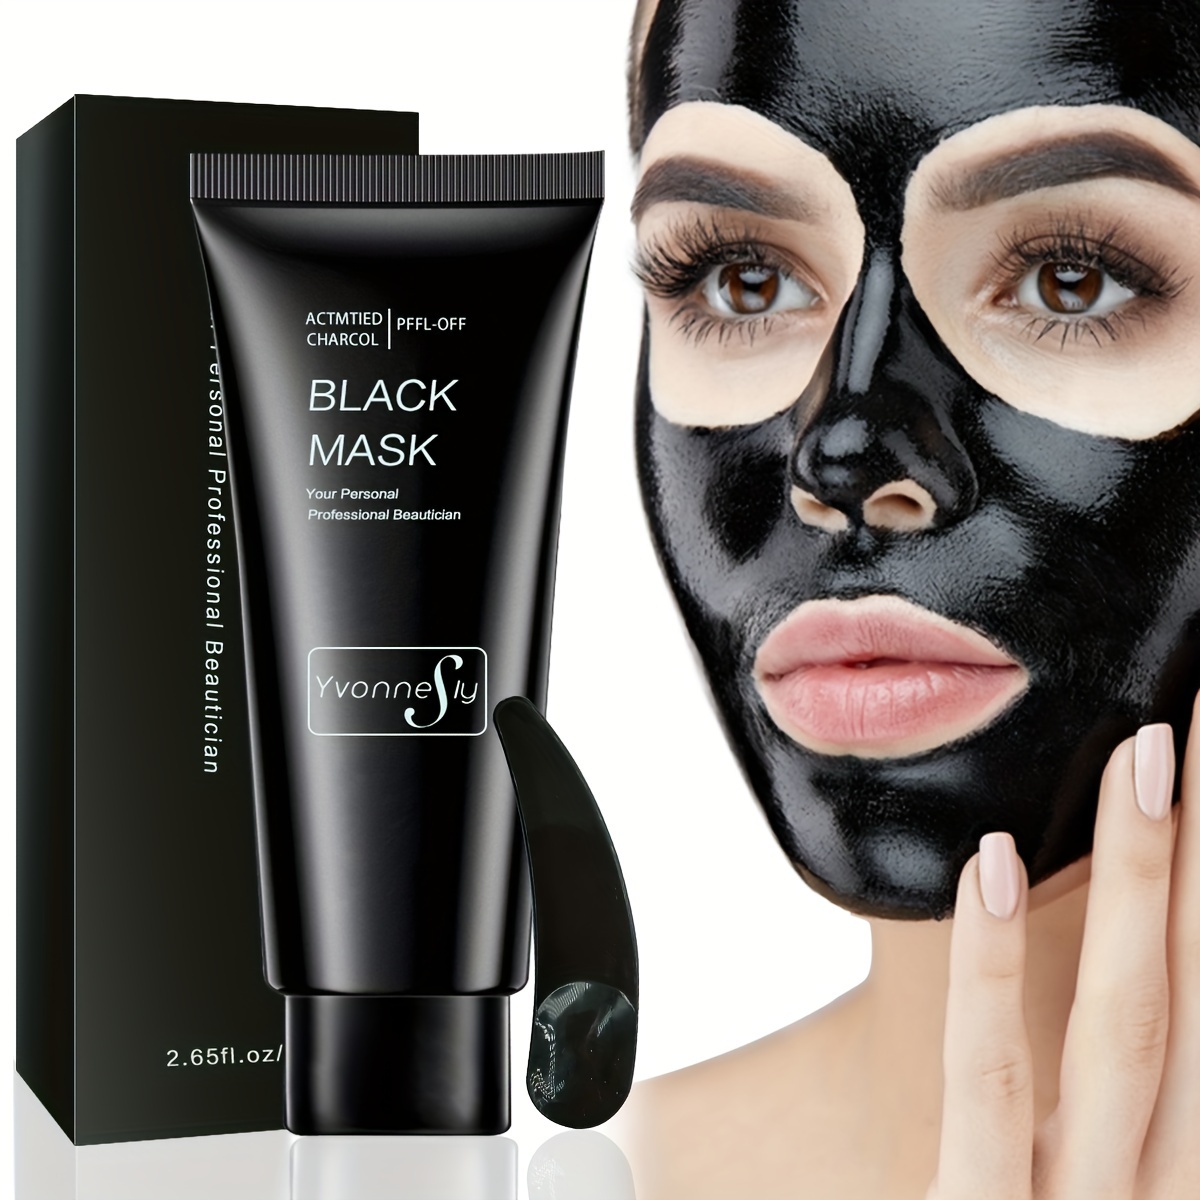  VANECL - Máscara eliminadora de puntos negros, máscara de  carbón activado para limpieza profunda, máscara de puntos negros  purificadora de poros, máscara negra para cara y nariz, todo tipo de piel, 